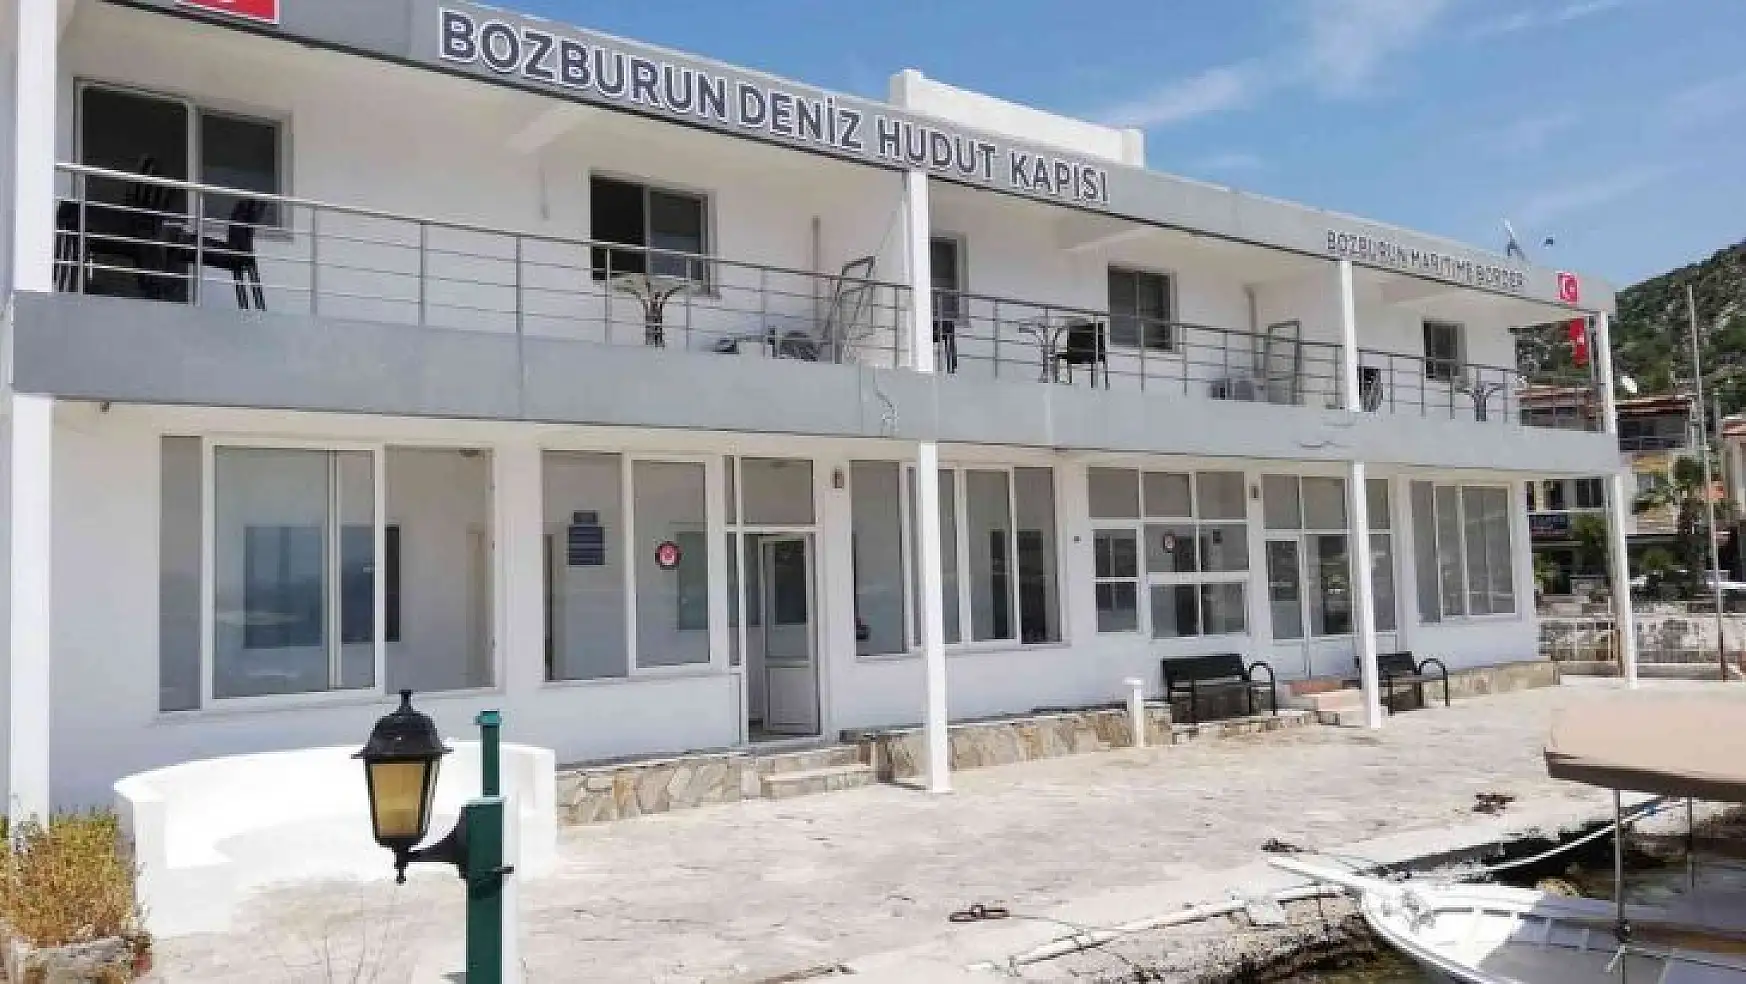 Marmaris Bozburun deniz hudut kapısı hizmete açıldı